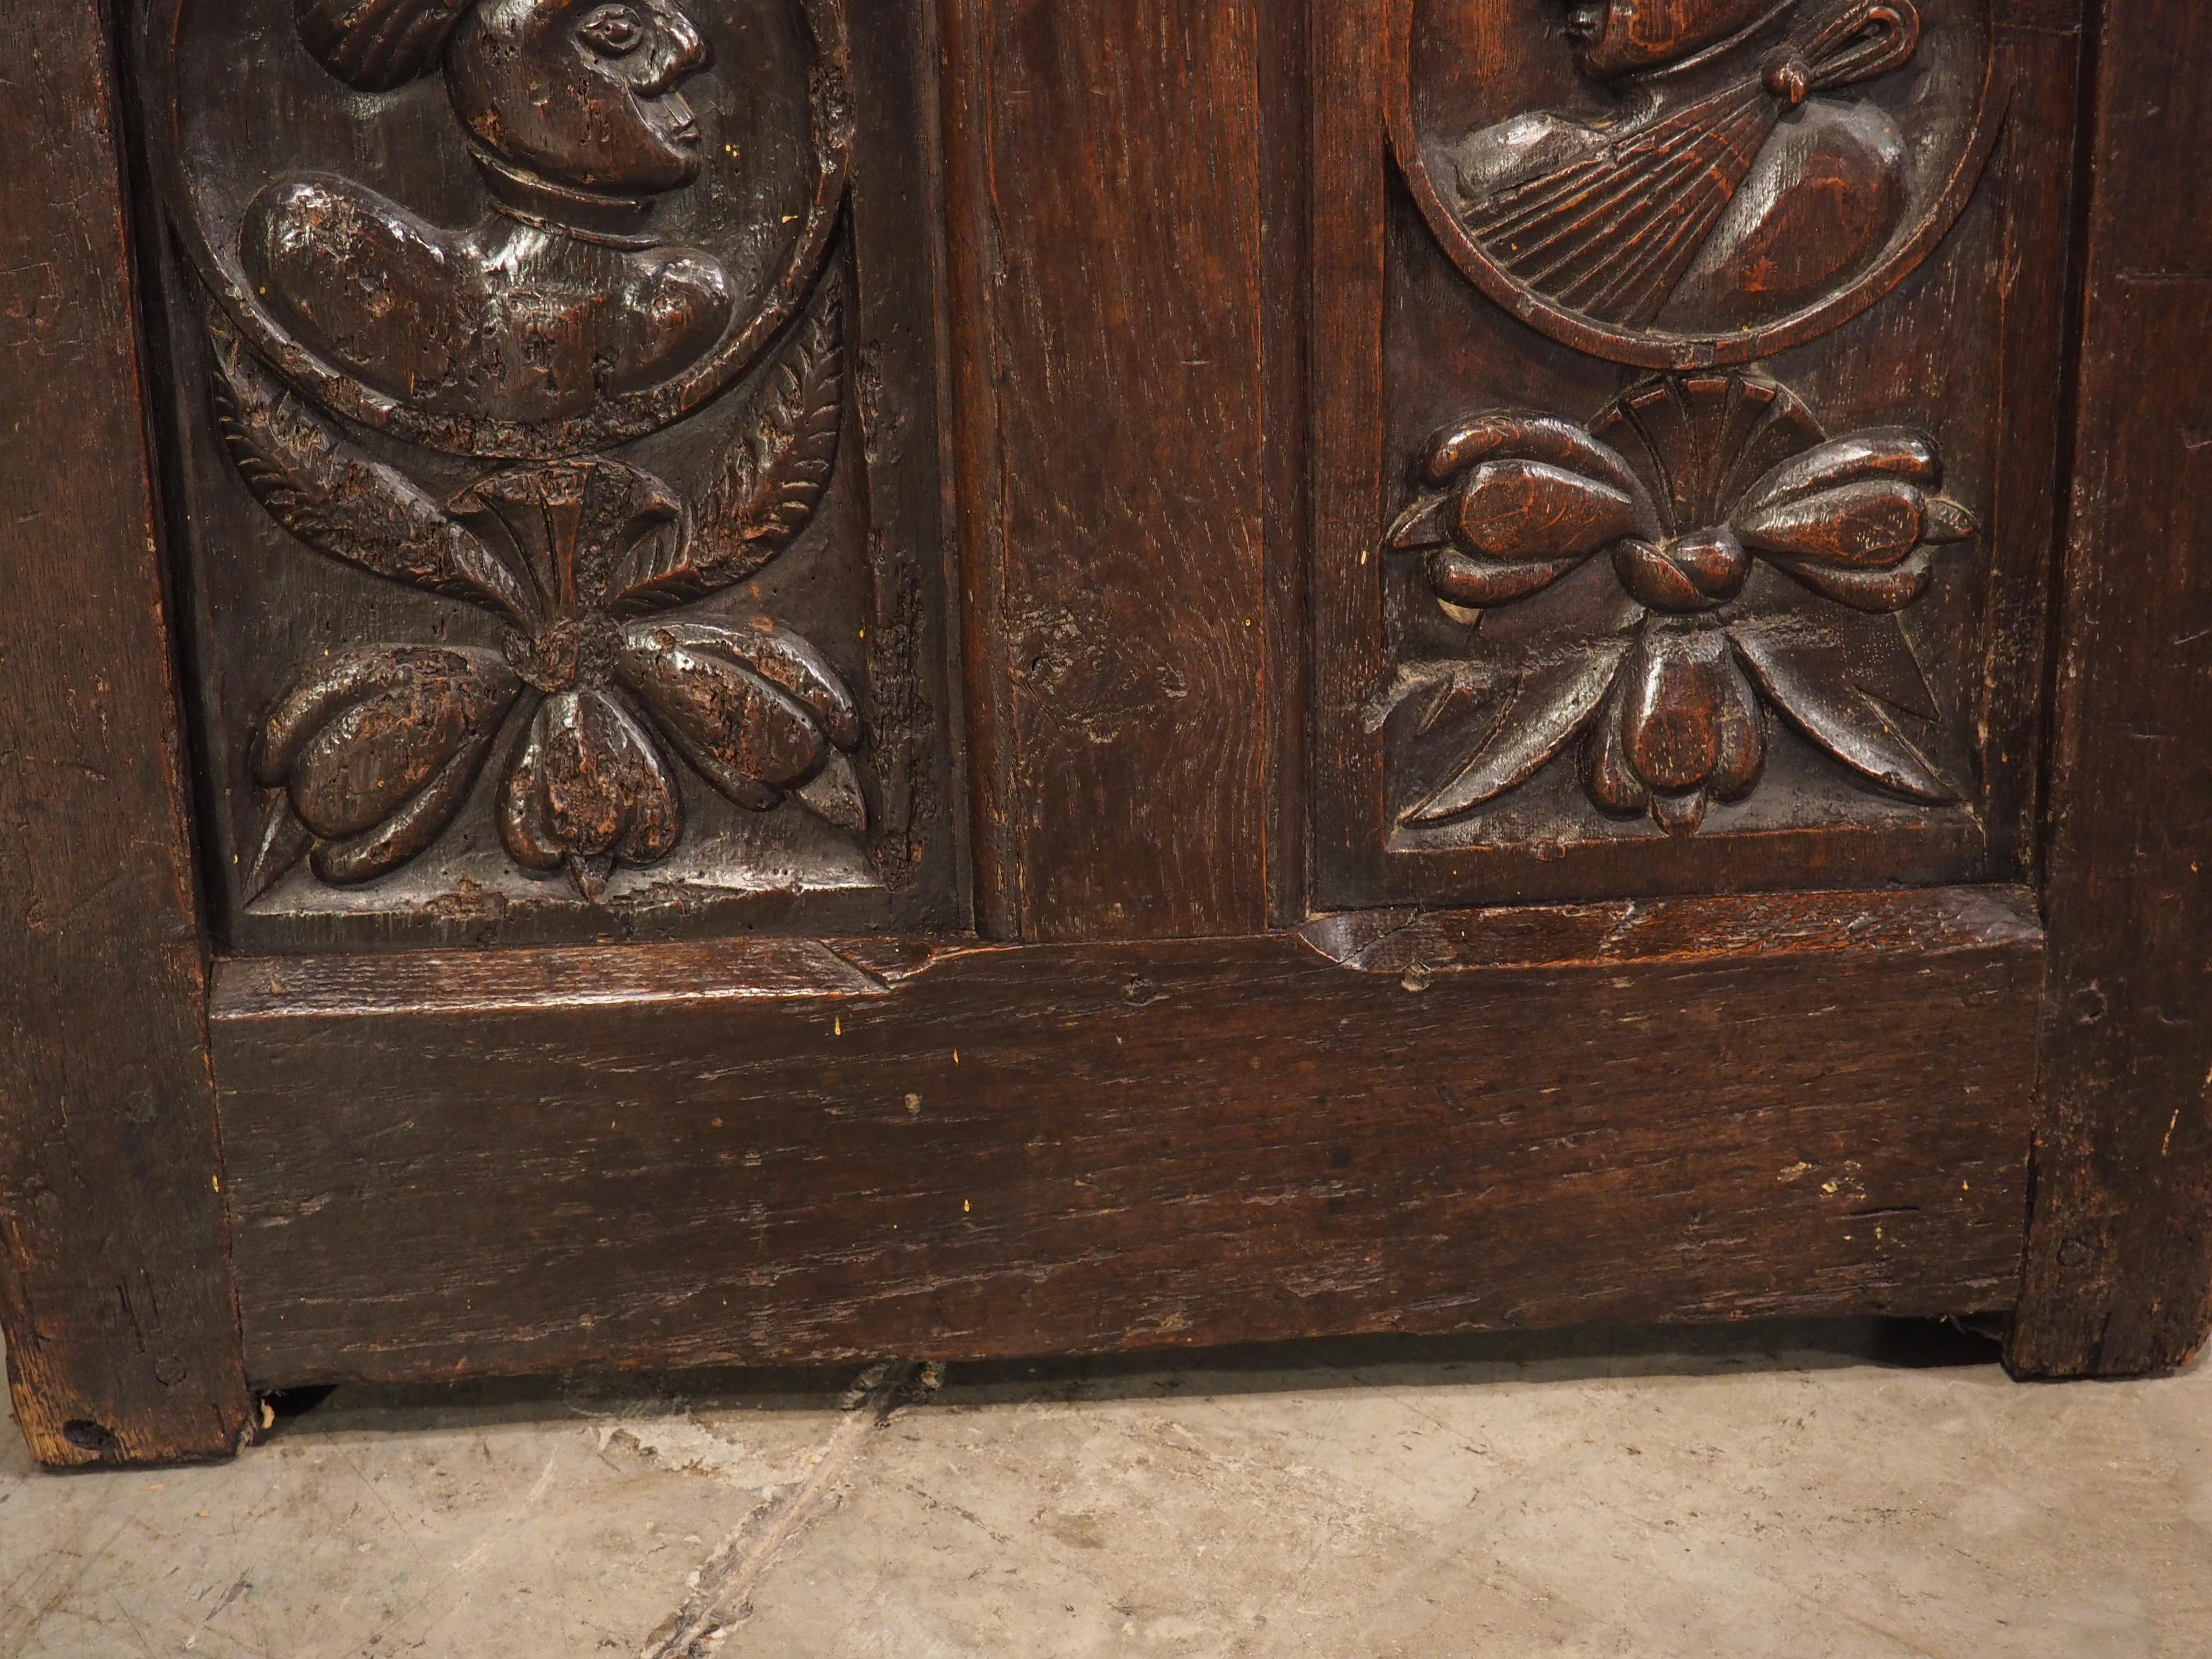 Alors que de nombreux meubles de la Renaissance italienne étaient fortement peints ou incrustés de motifs décoratifs, les exemples français utilisaient des éléments sculptés à la main comme forme prédominante d'ornementation. Ce coffre en chêne